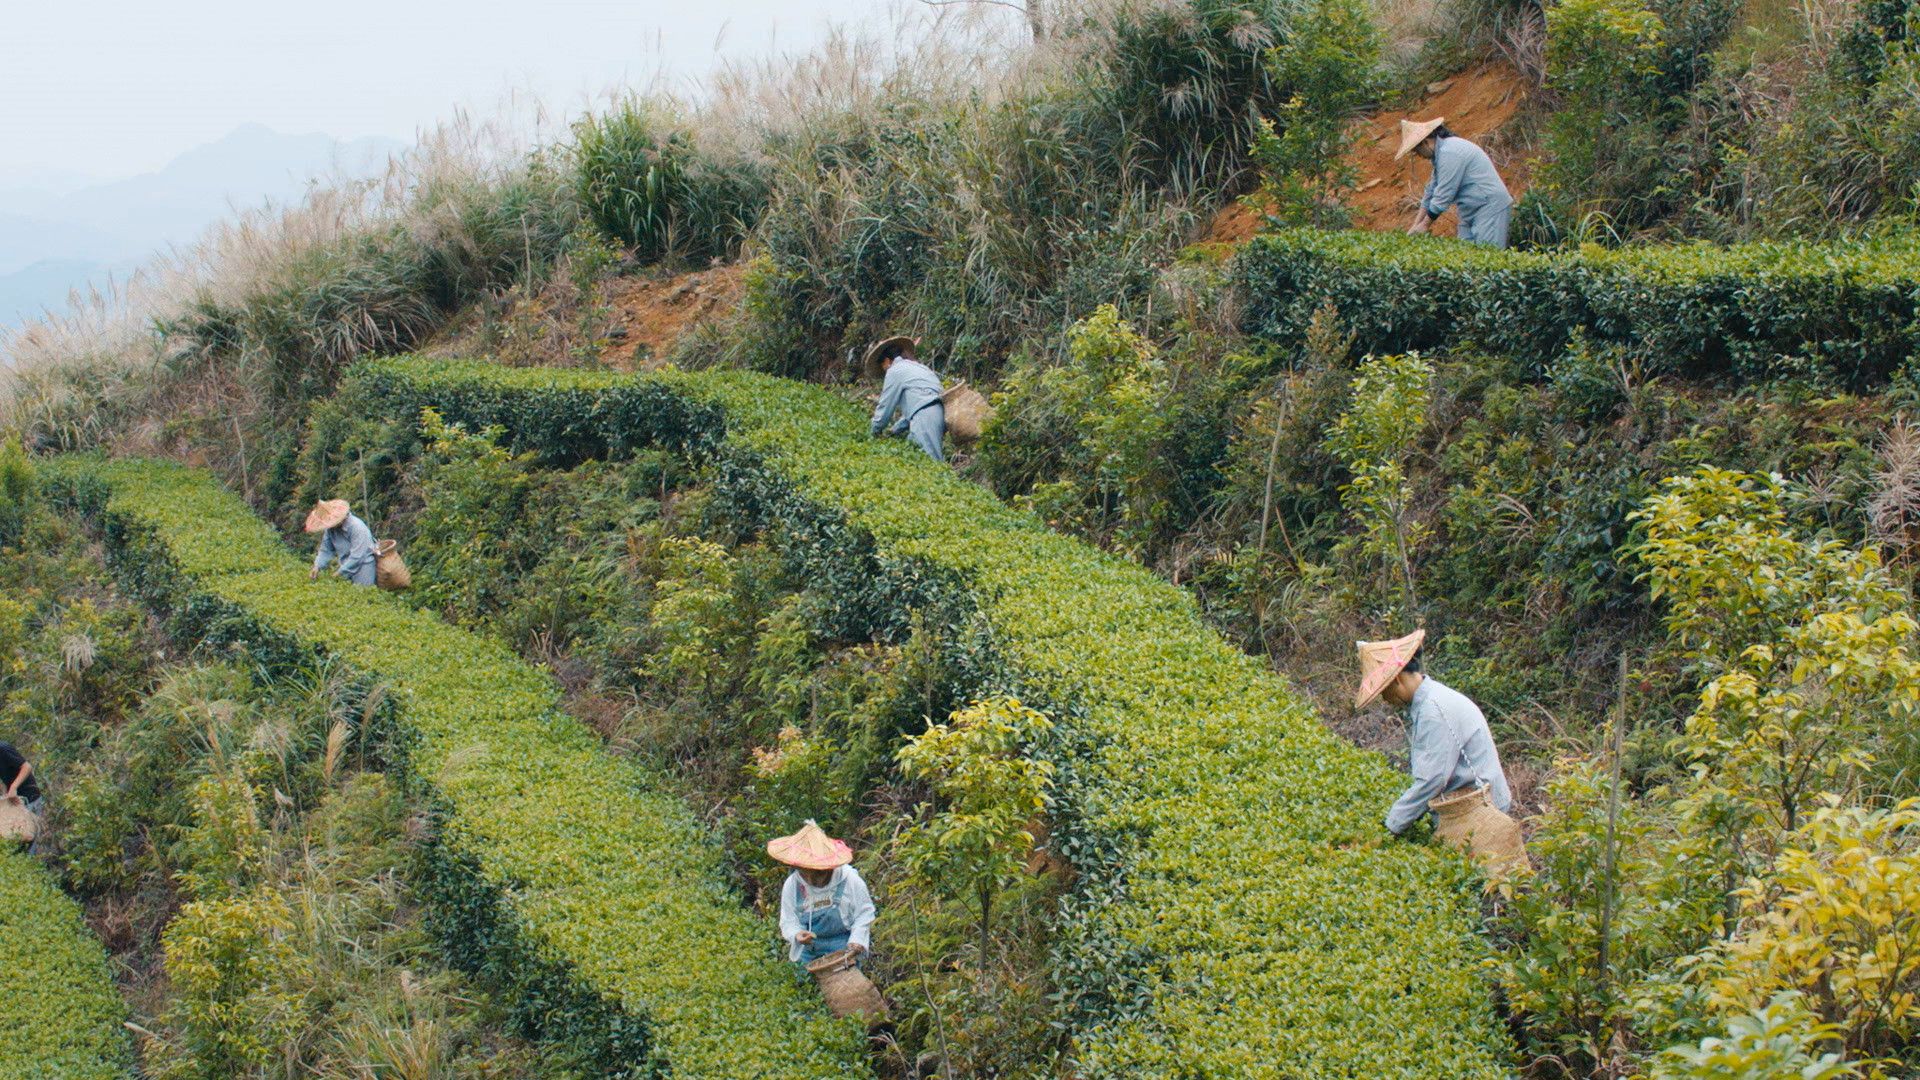 يُعد شاي تي غوان يين واحداً من أجود انواع الشاي في... [Photo of the day - ديسمبر 2021]